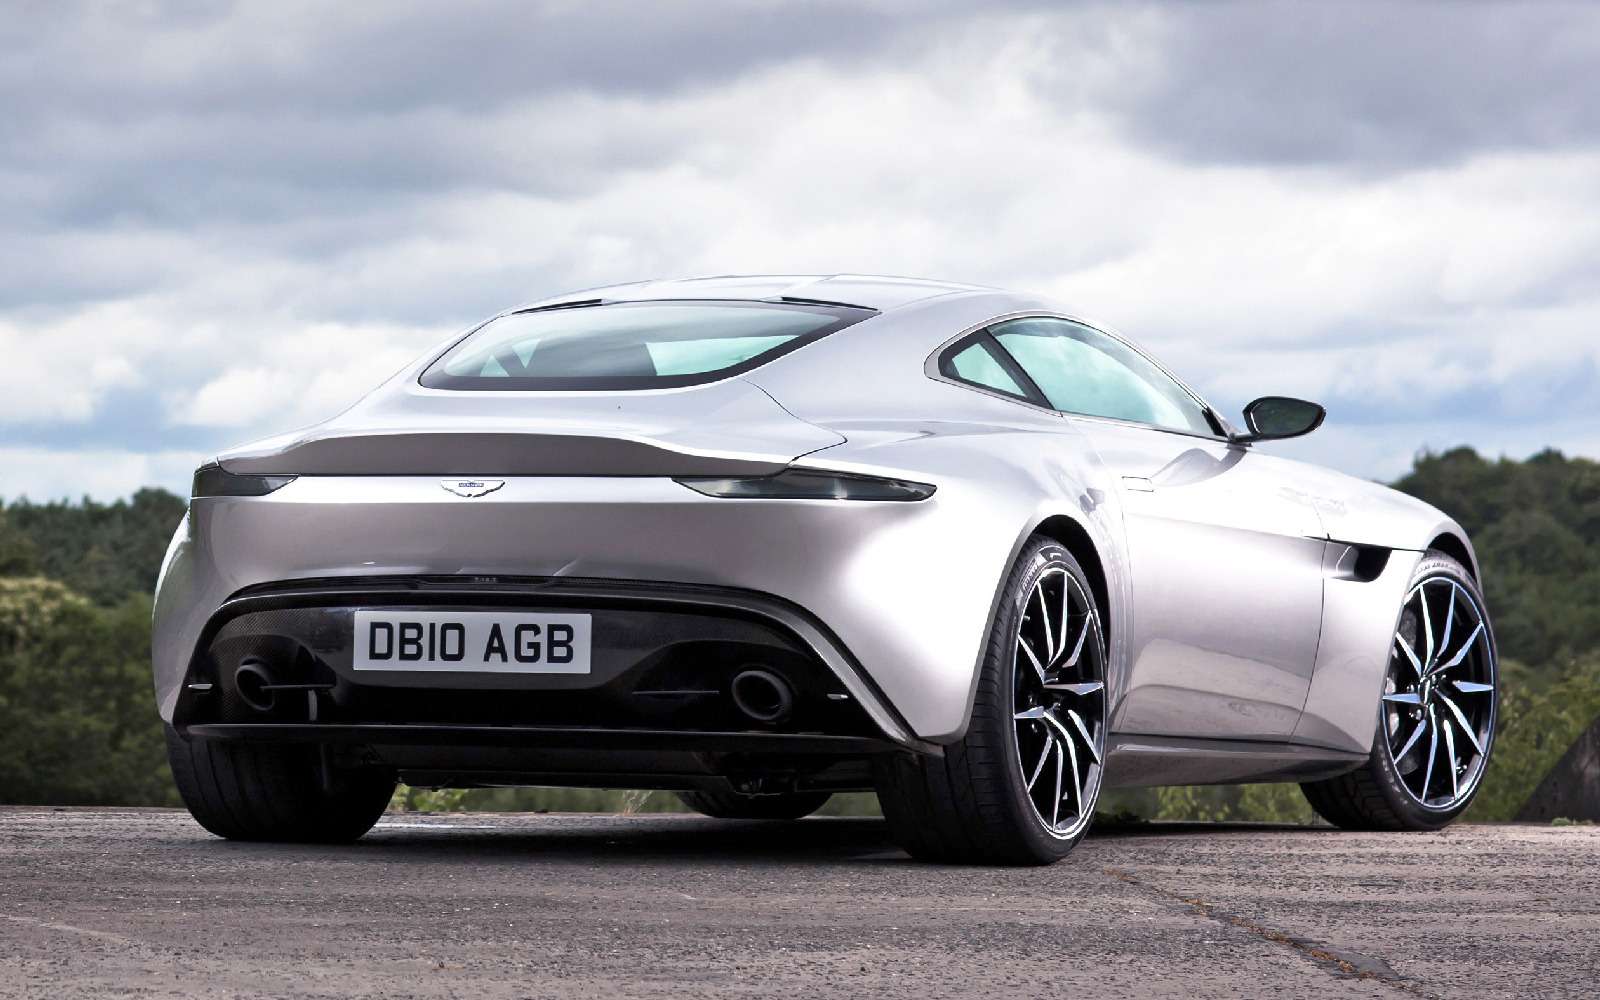 Проверено Джеймсом Бондом: представлен новый Aston Martin Vantage — фото 818875